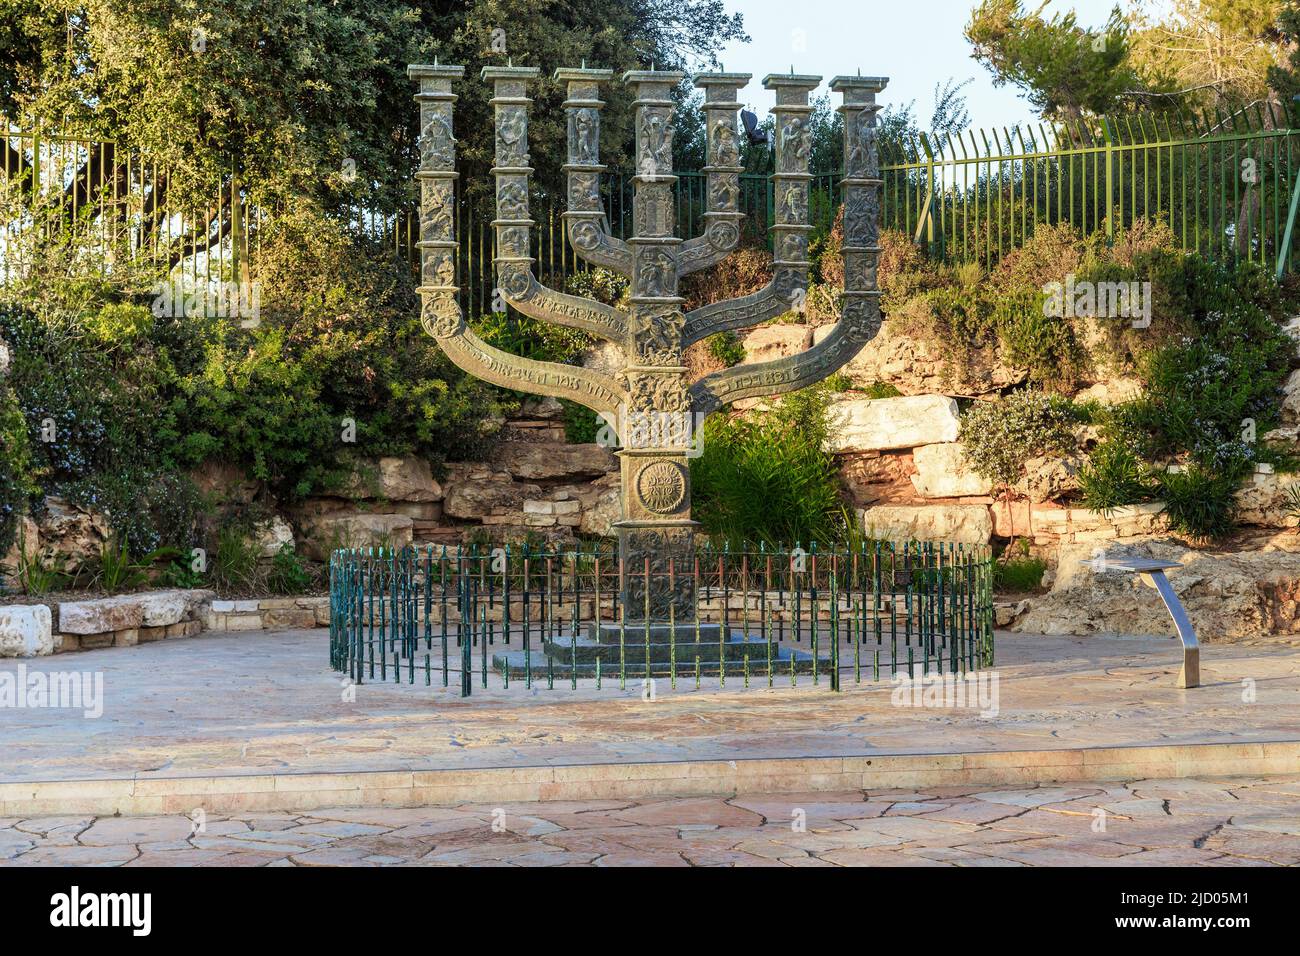 JÉRUSALEM, ISRAËL - 24 SEPTEMBRE 2017 : la Knesset Menorah est un énorme chandelier près du Parlement avec des bas-reliefs de la Bible. Banque D'Images